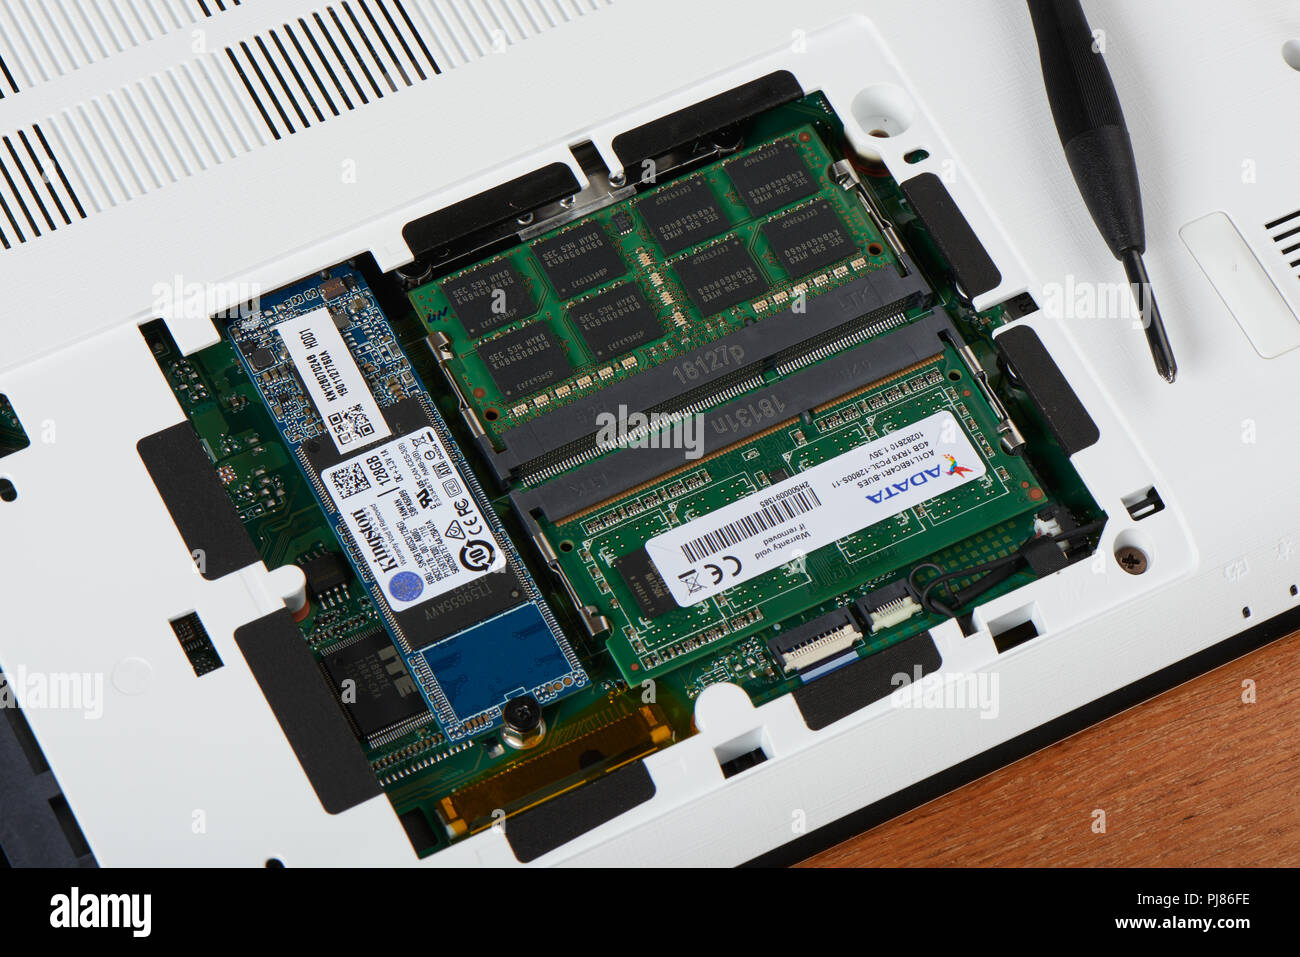 Gimpo-si, Korea - Juli 10, 2018: Access Panel mit DDR3L-RAM und M.2 SATA-SSD auf der Unterseite des Laptops, die RAM und SSD SATA M. 2 Steckplatz für Festplatte Stockfoto